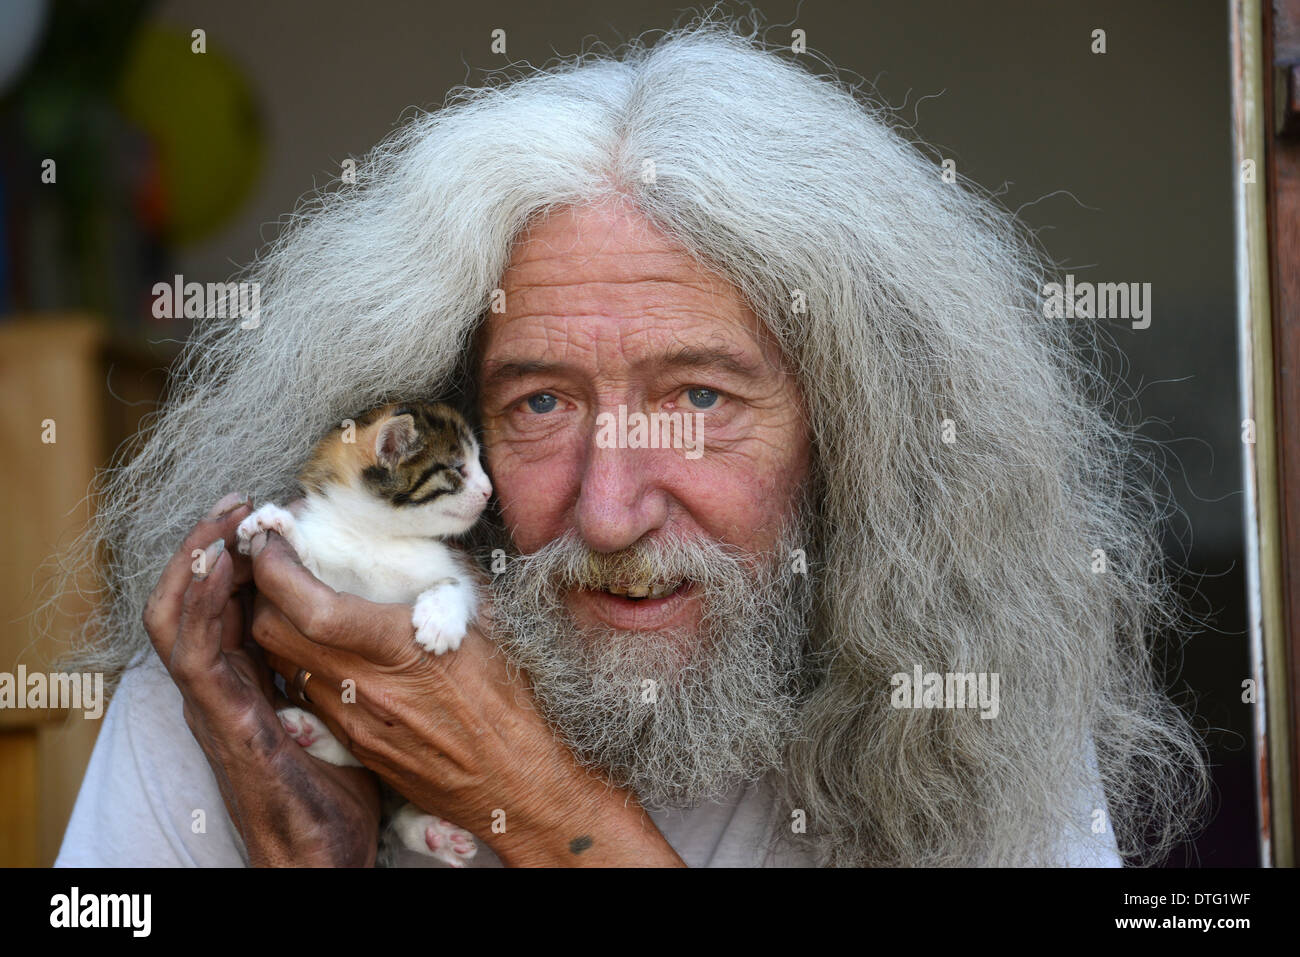 Uomo con capelli lunghi e barba John Julian con uno dei gattini che ha trovato nella sua capanna. Gli amanti degli animali kitten salvataggio salvato Gran Bretagna gente del Regno Unito maschio Foto Stock